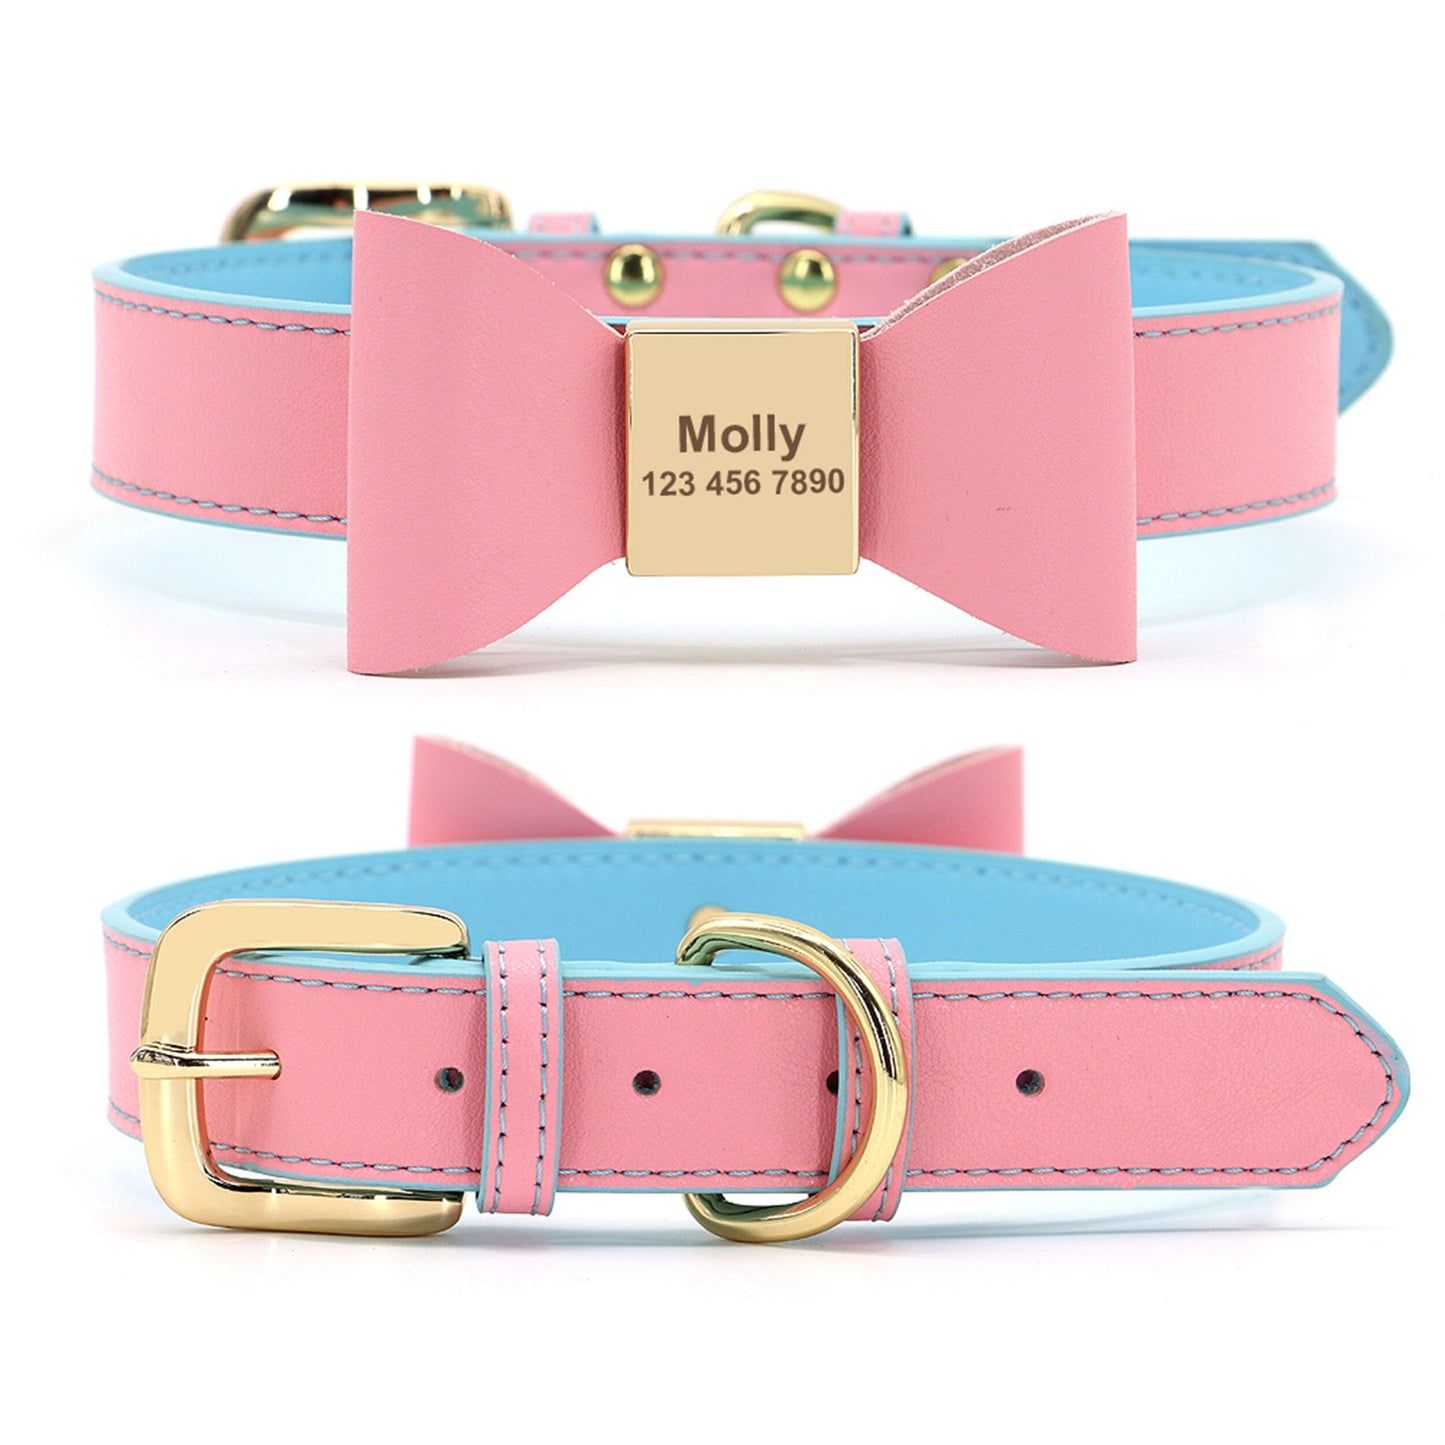 Premium Echtleder Hundehalsband mit Personalisierung | Bowknot Halsband Mein Shop Rosa/Hellblau XS 